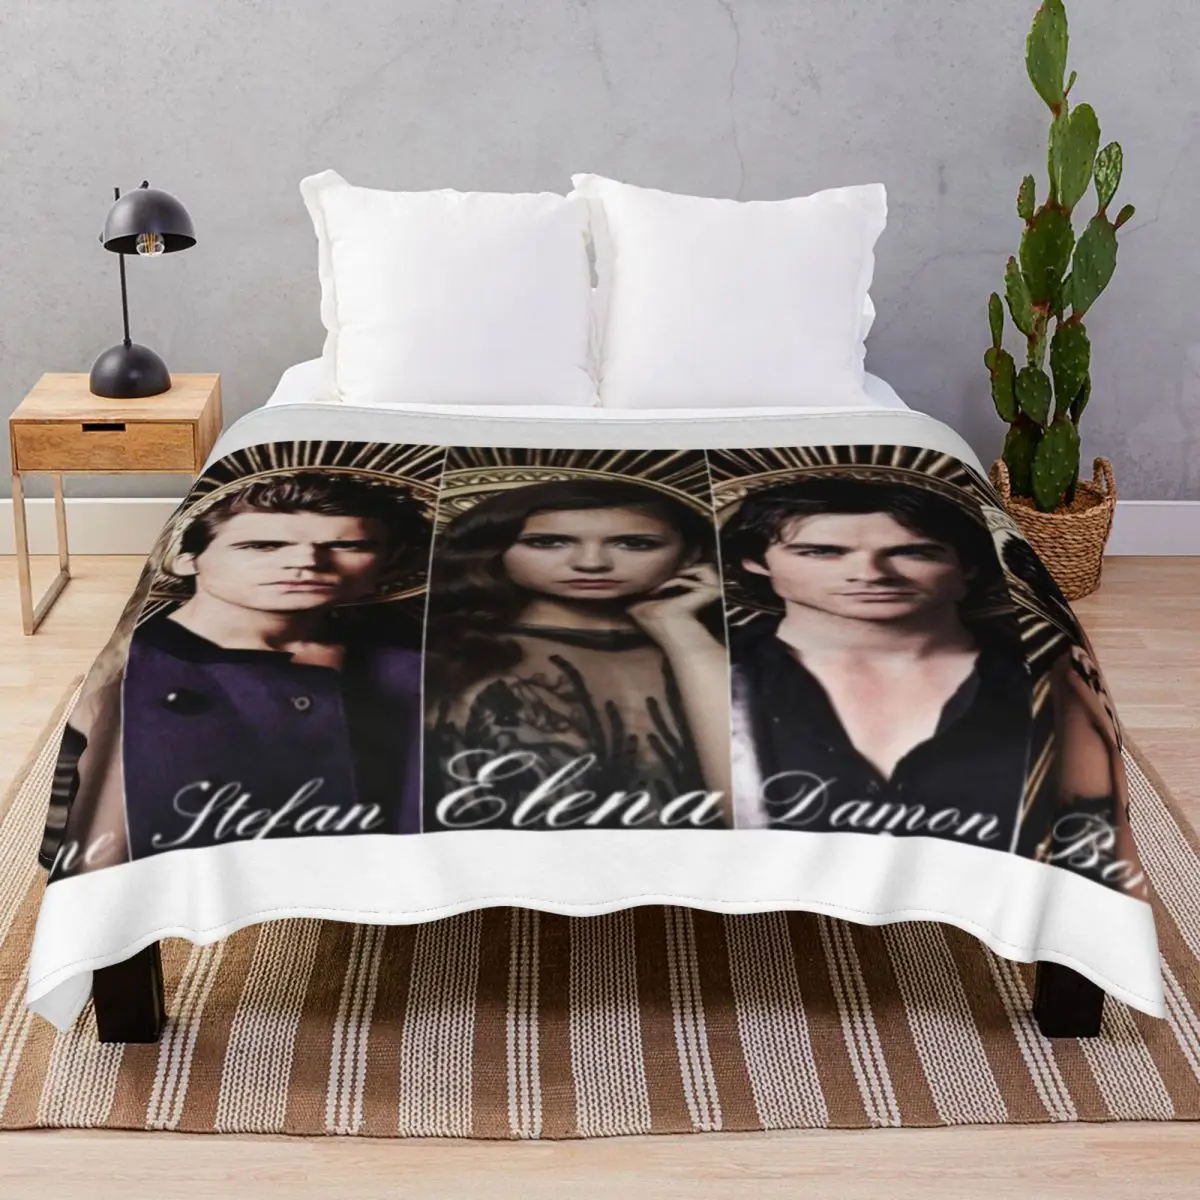 Tvd Cast Photoshoot Blanket Velvet Plush Decoration Portable Throw Blankets for Bedding Sofa Travel Office